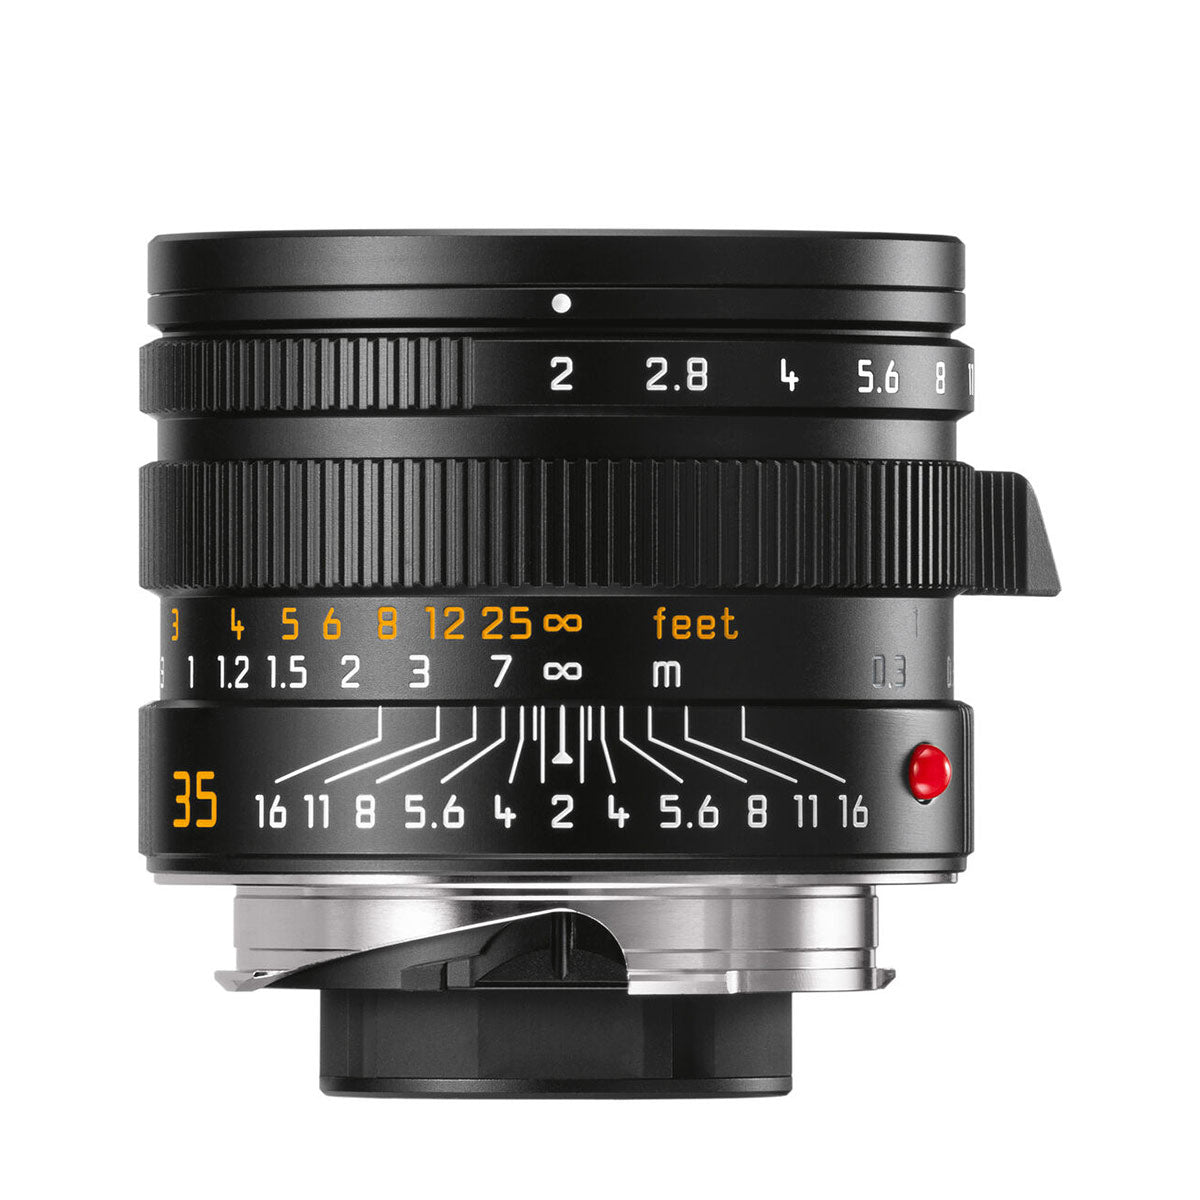 Leica 35mm f/2 APO-Summicron-M ASPH Lens